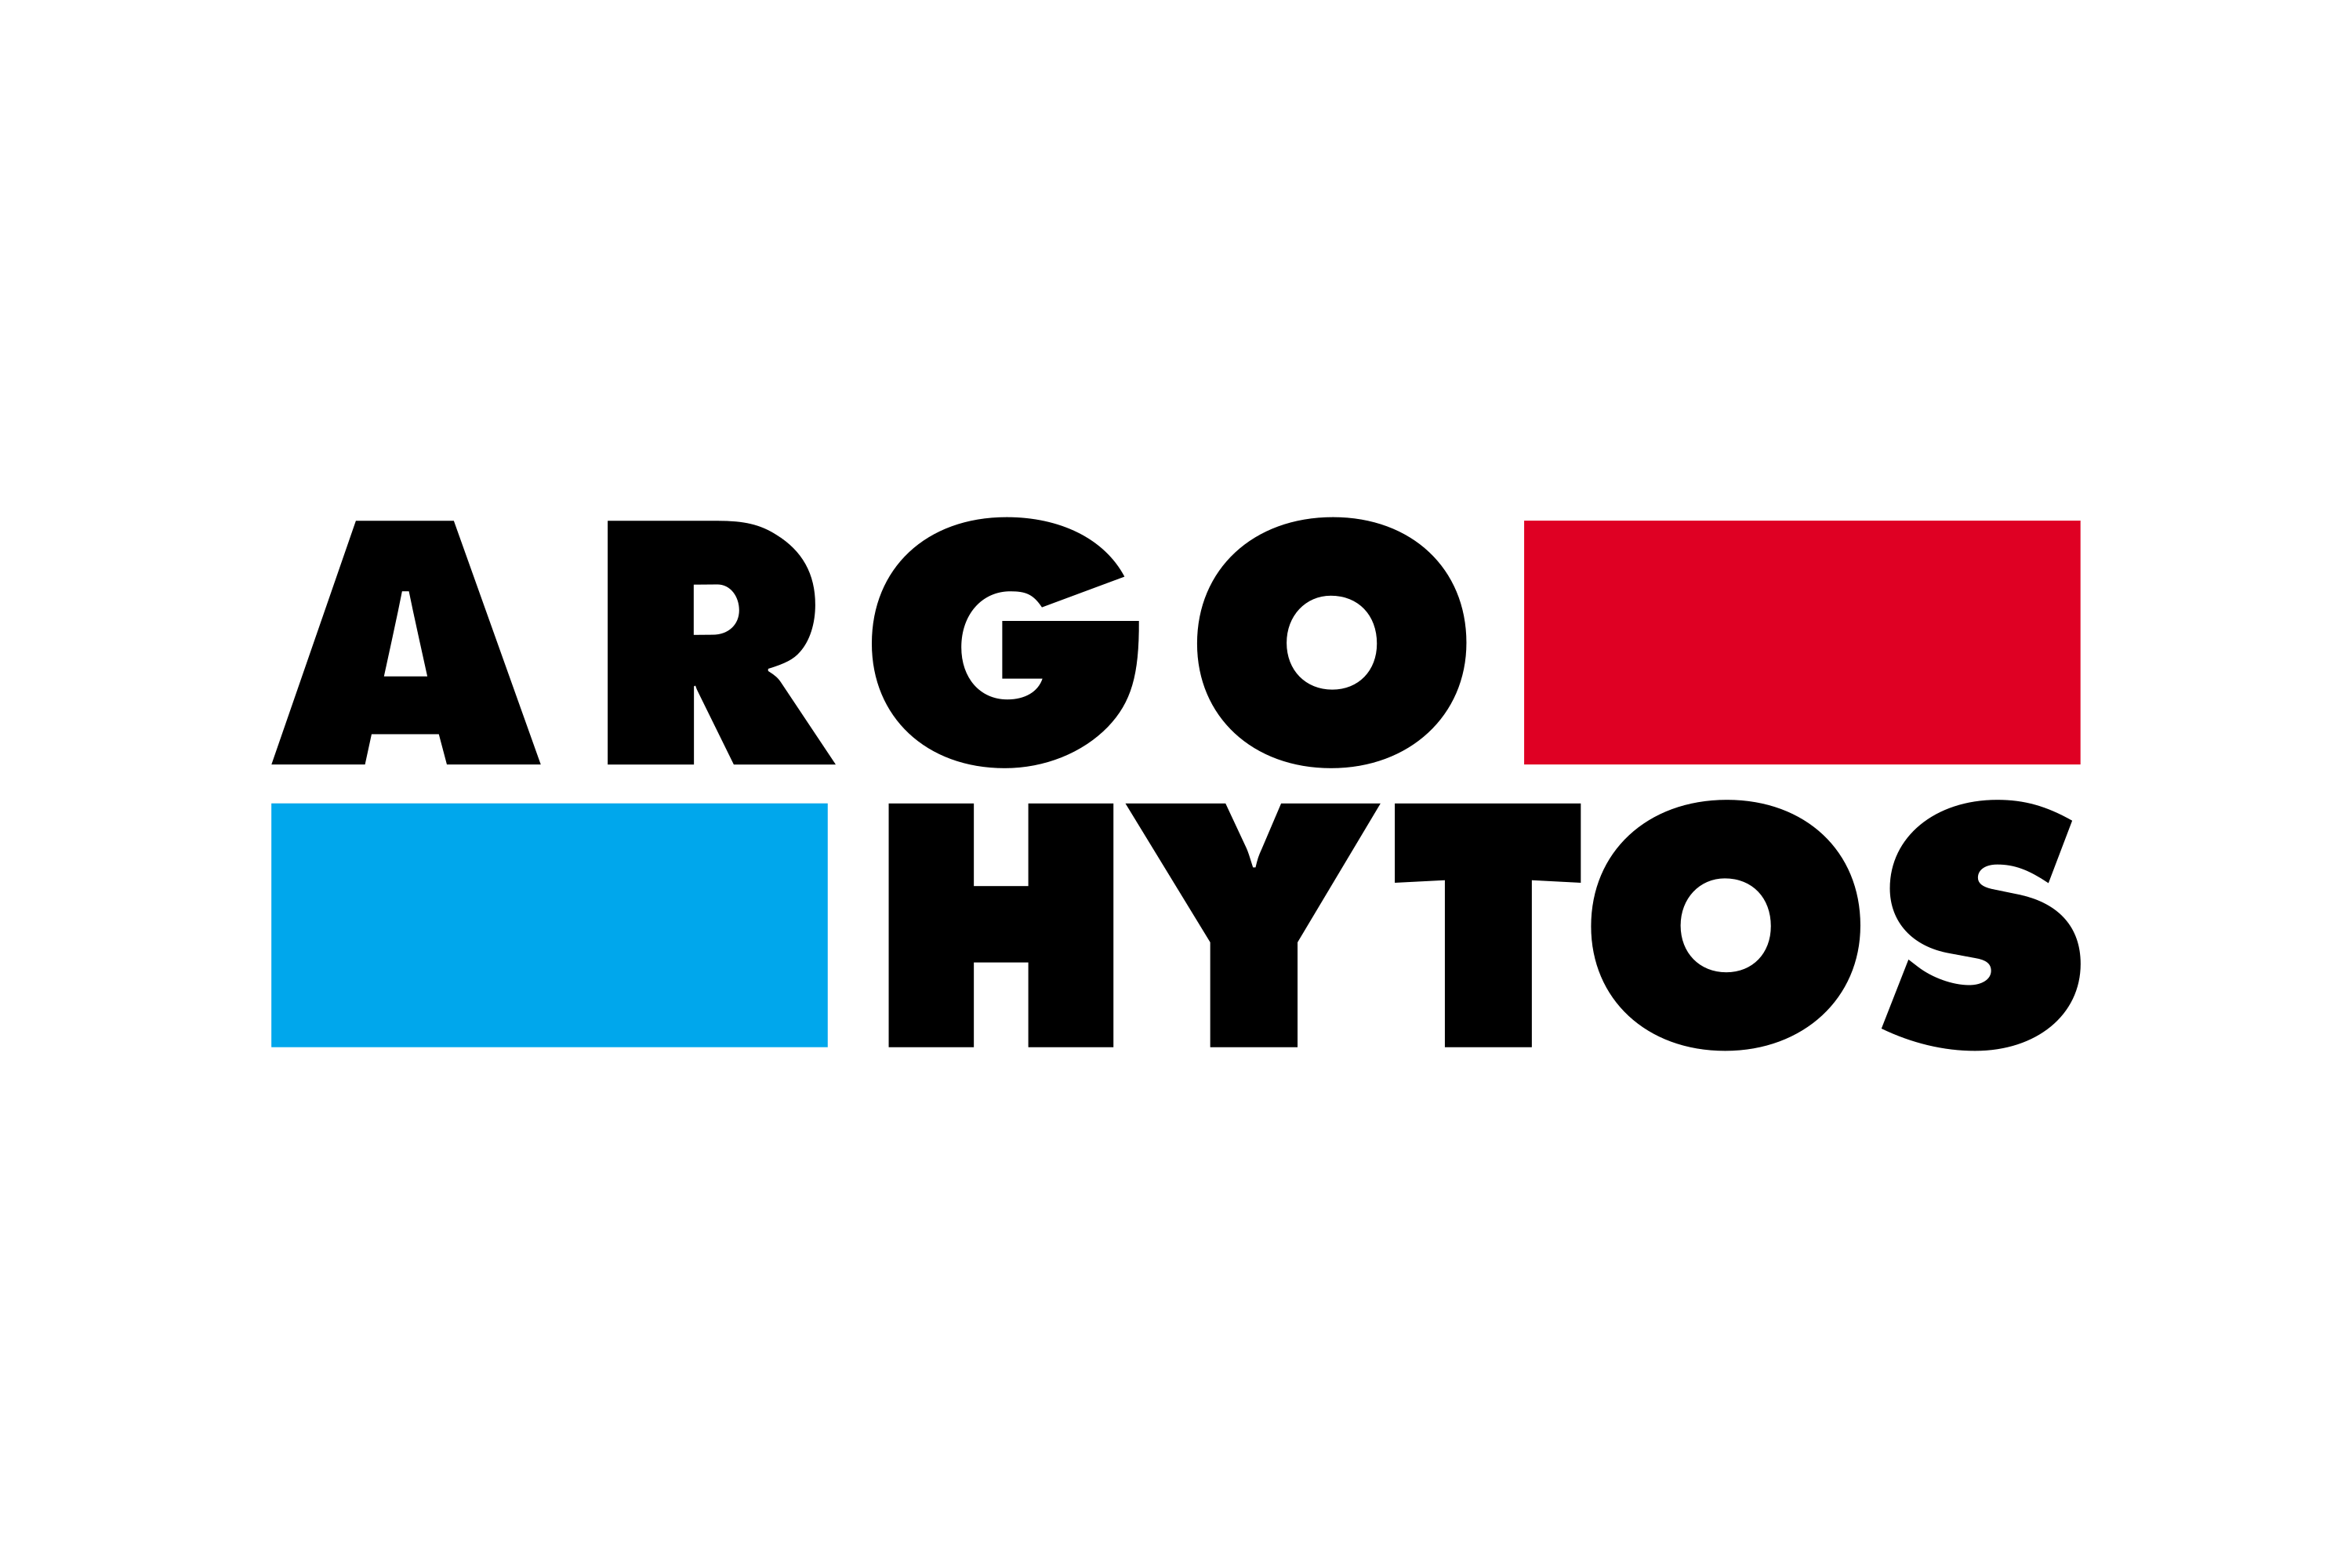 Argo Hytos